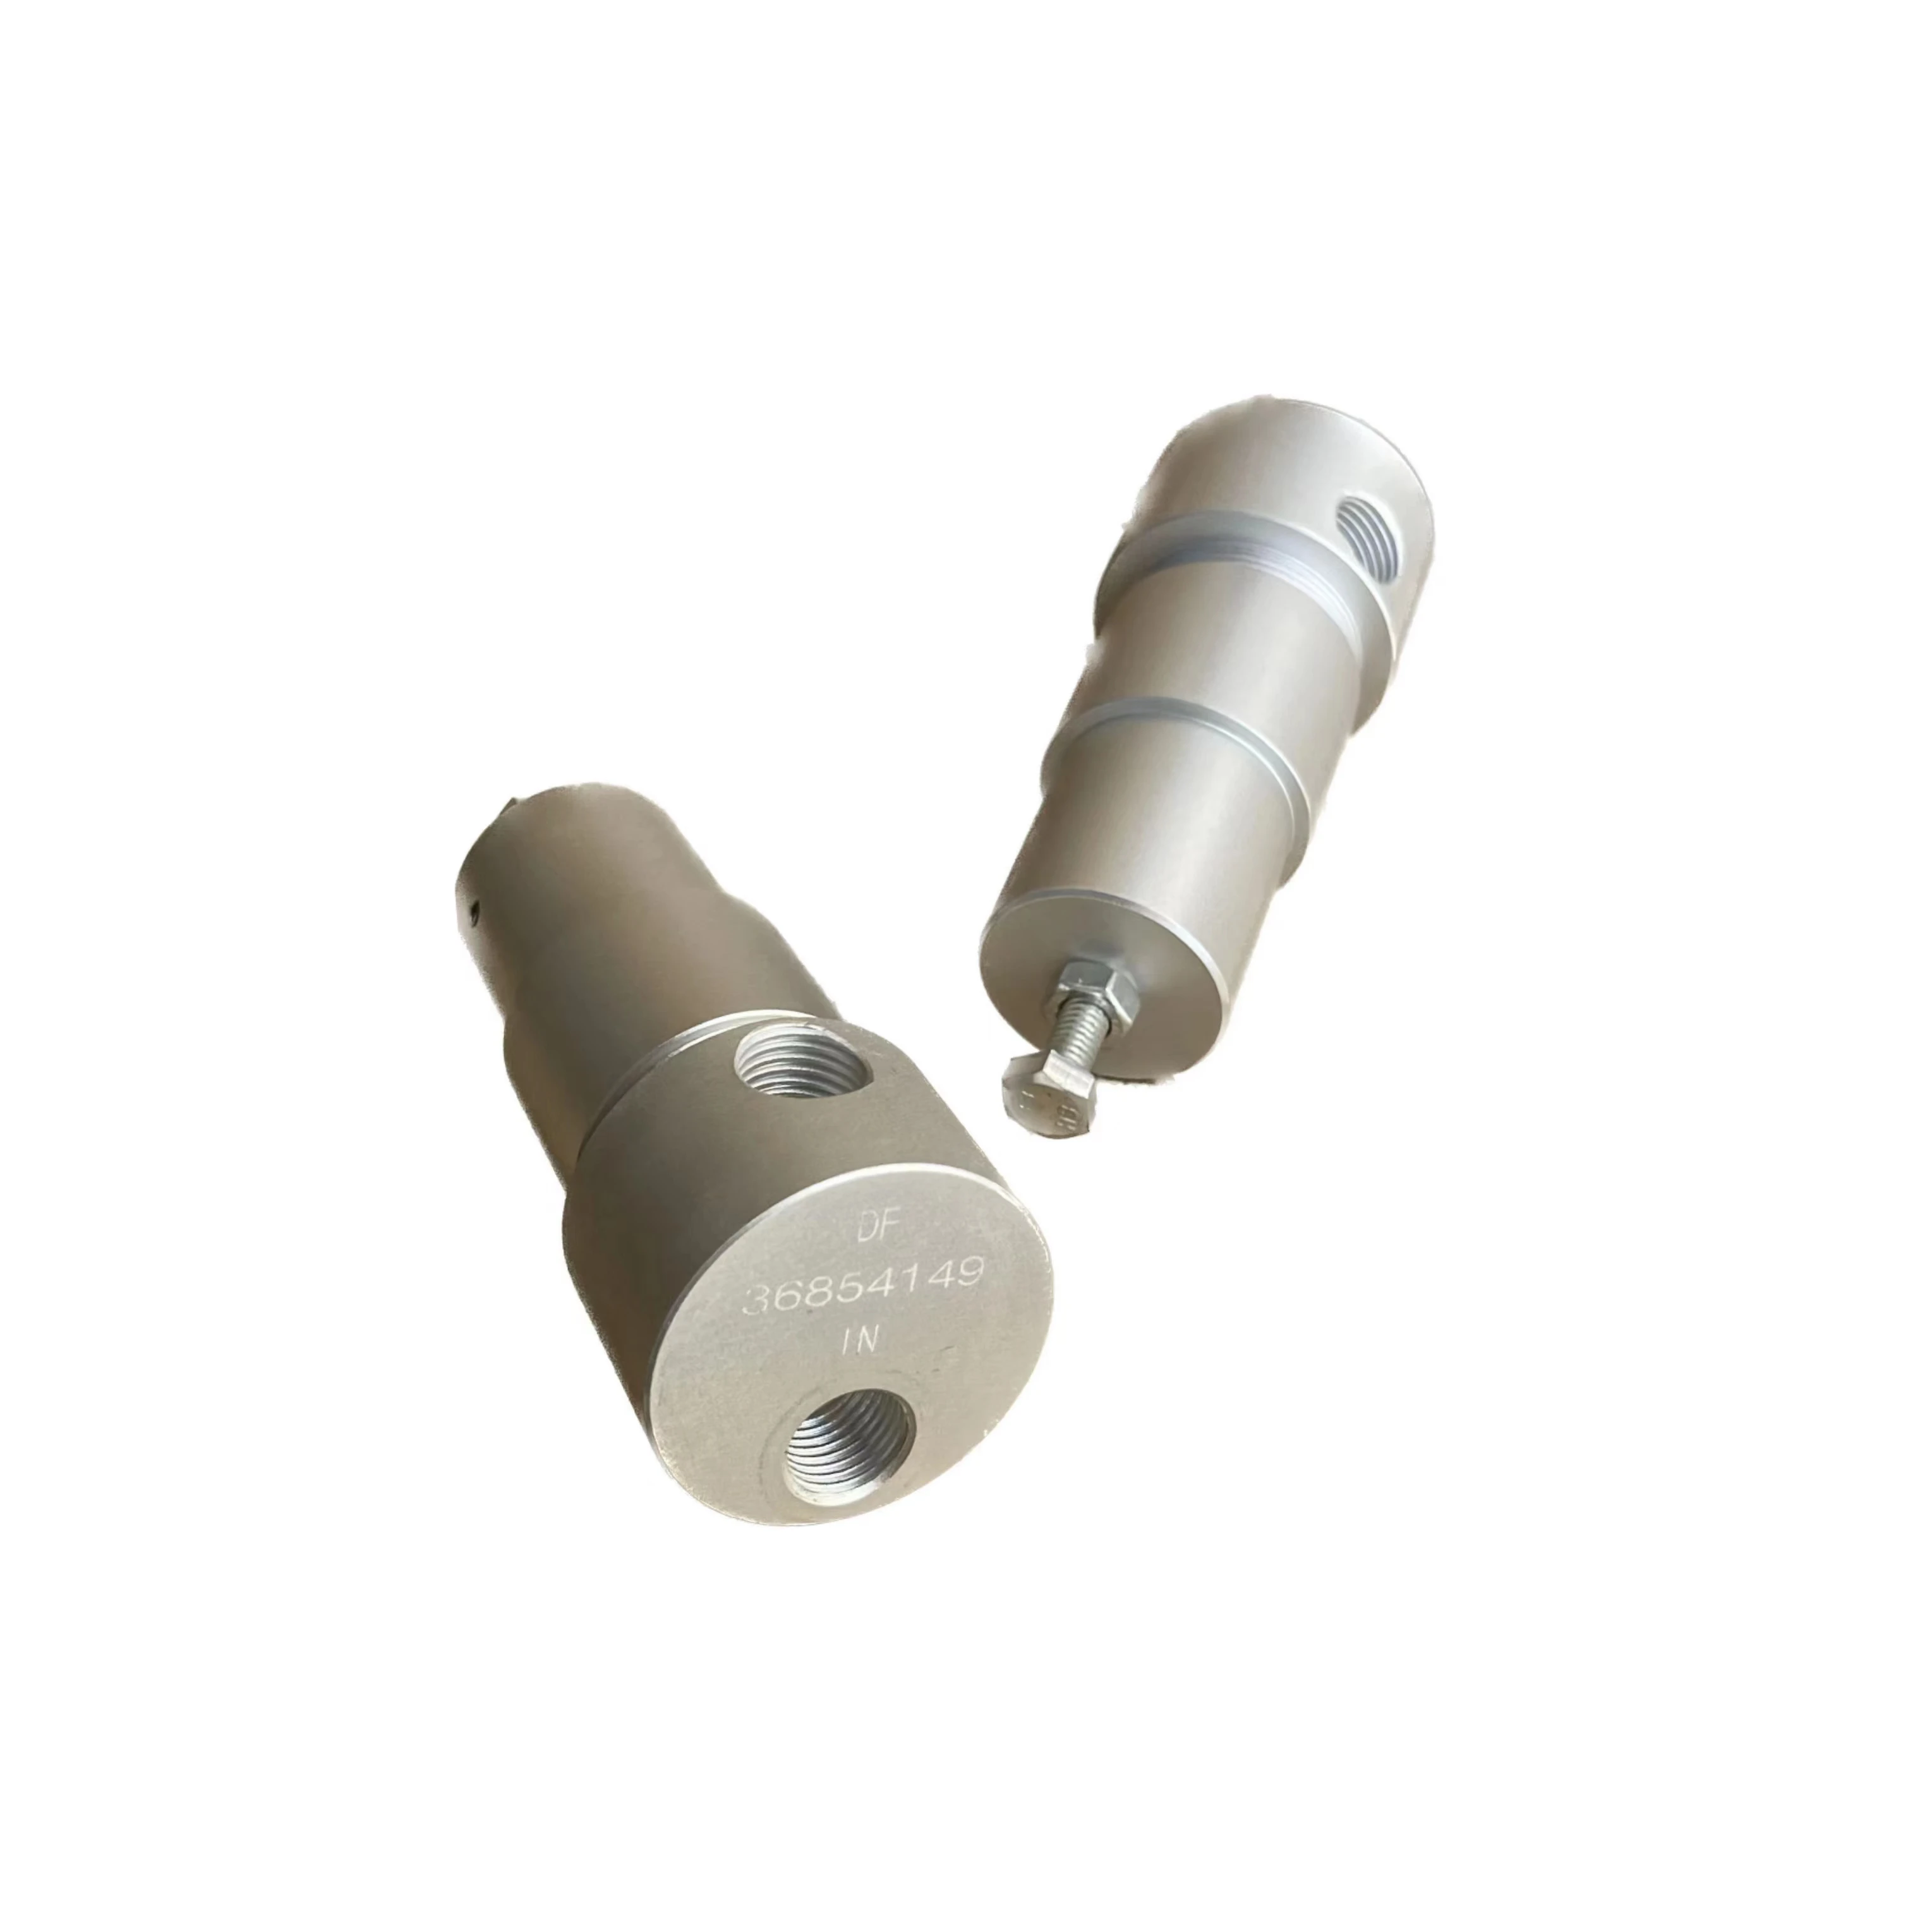 

Spot Goods 36854149 pneumatic regulator valve spare parts air compressor for auto air compressor